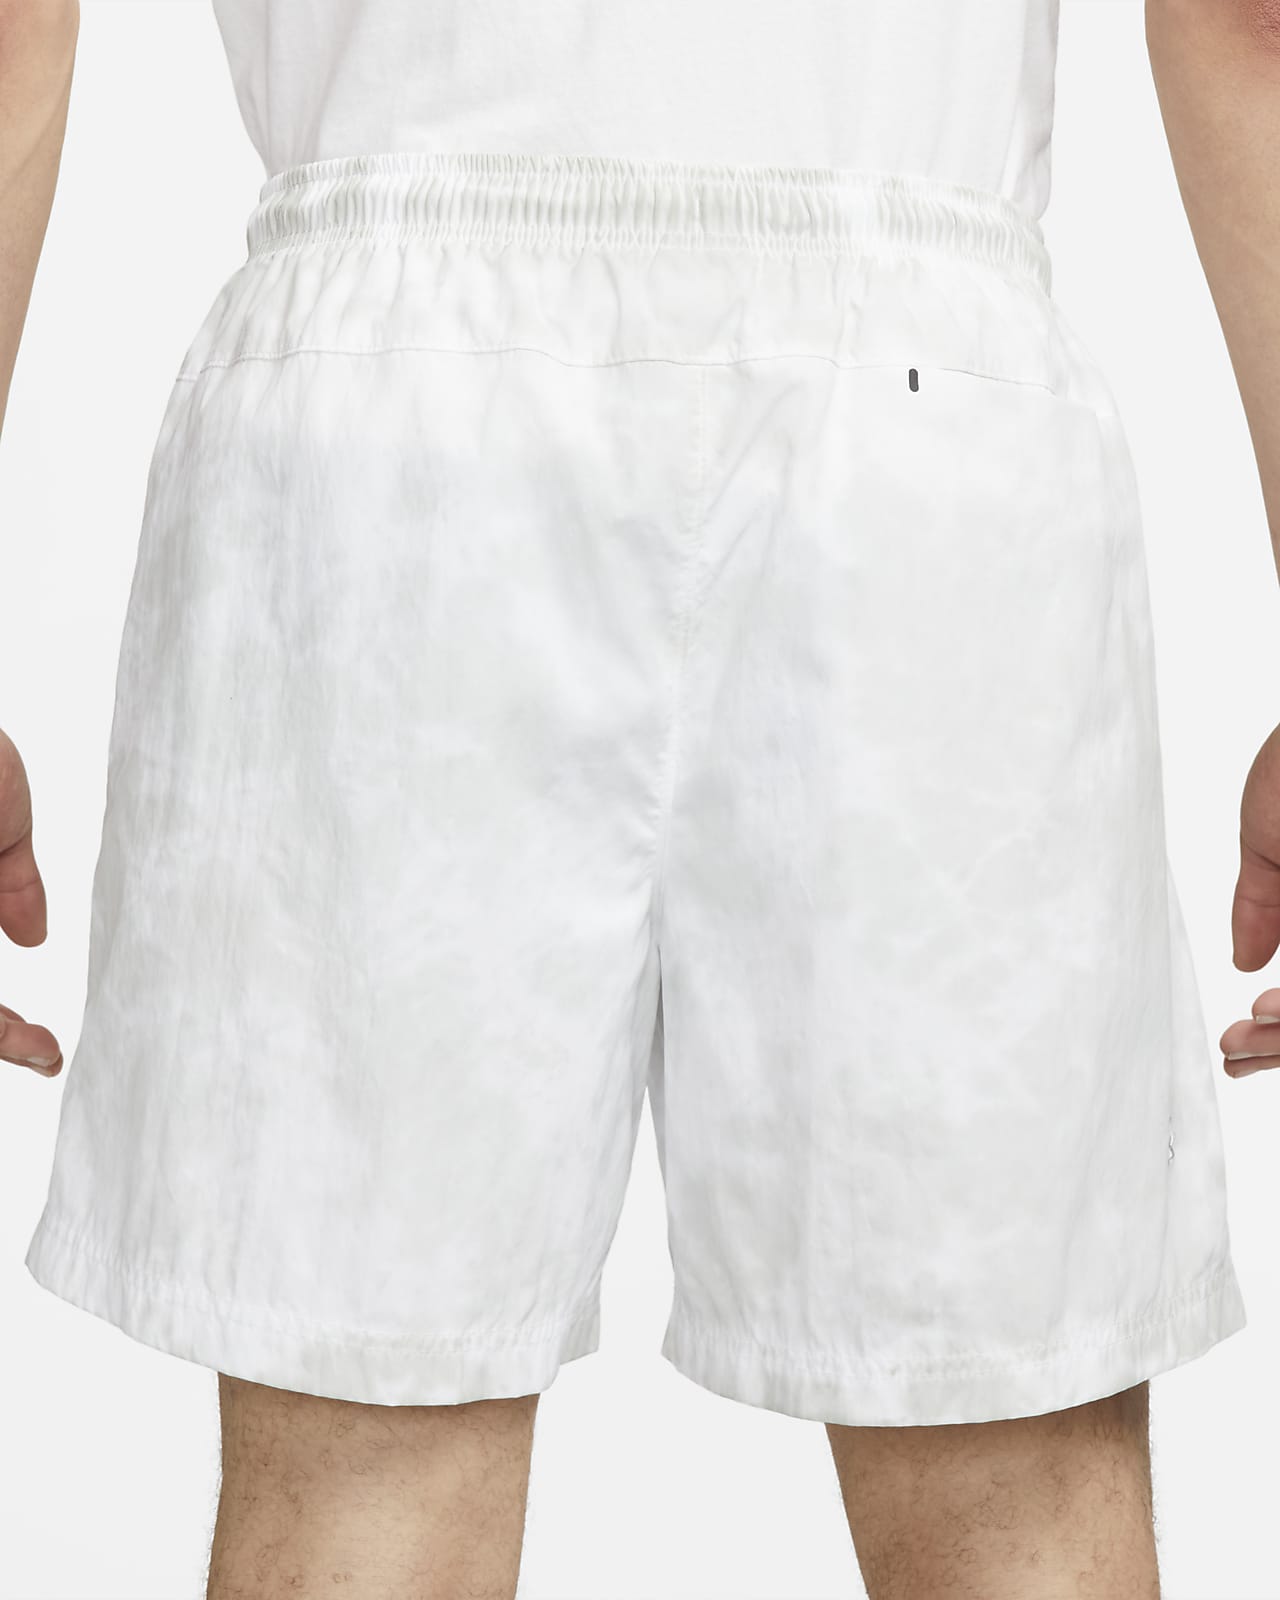 Woven Nike Shorts. Men\'s Tech Pack Sportswear